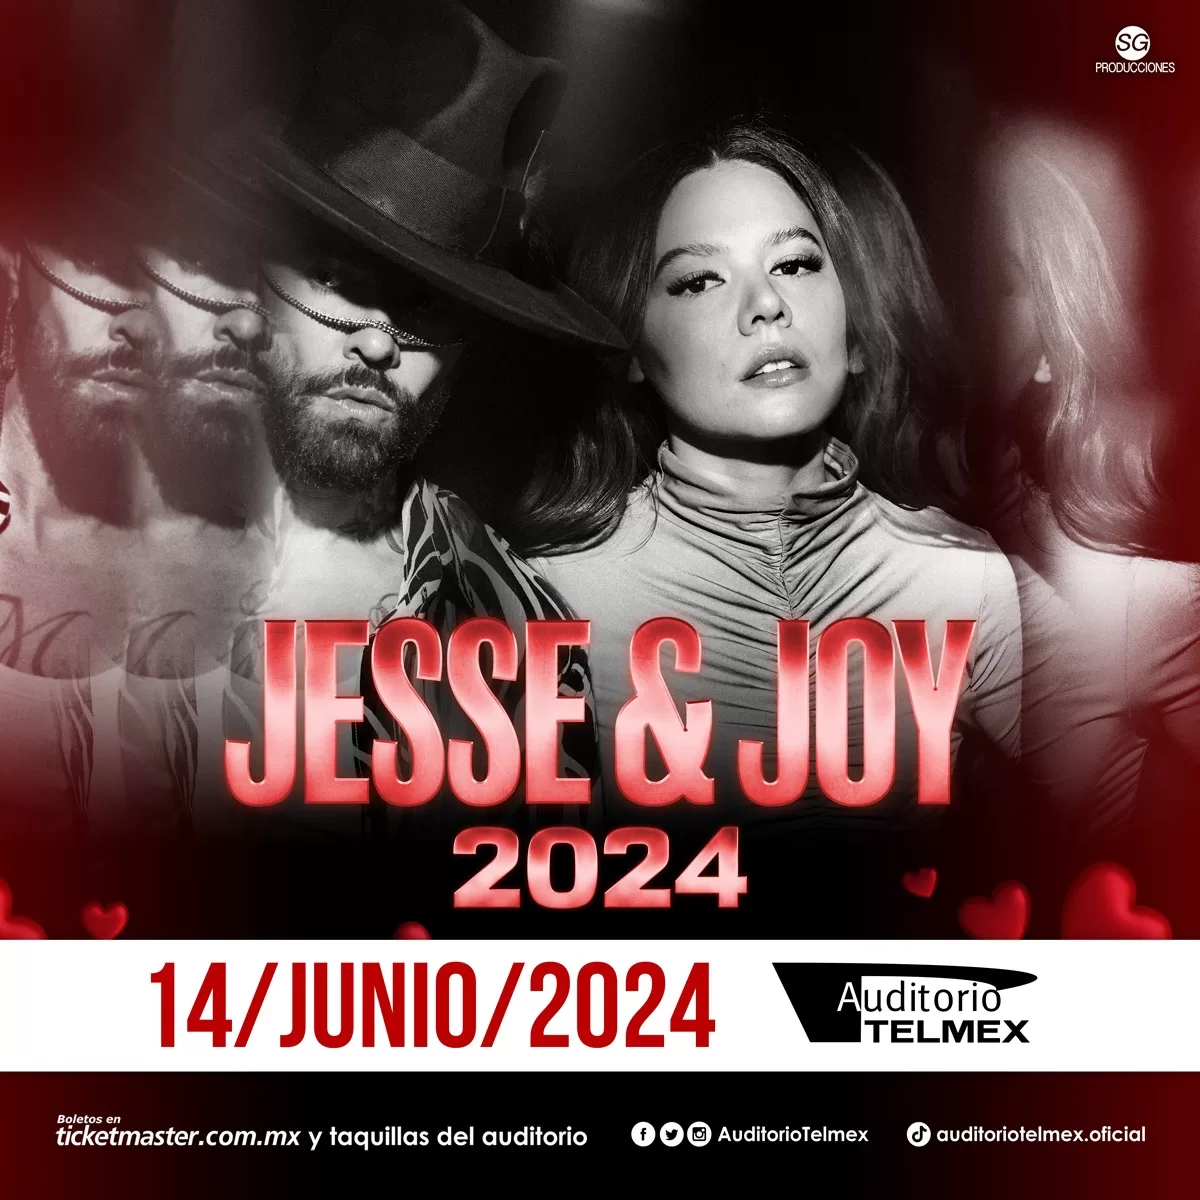 boletos concierto jesse y joy guadalajara 2024